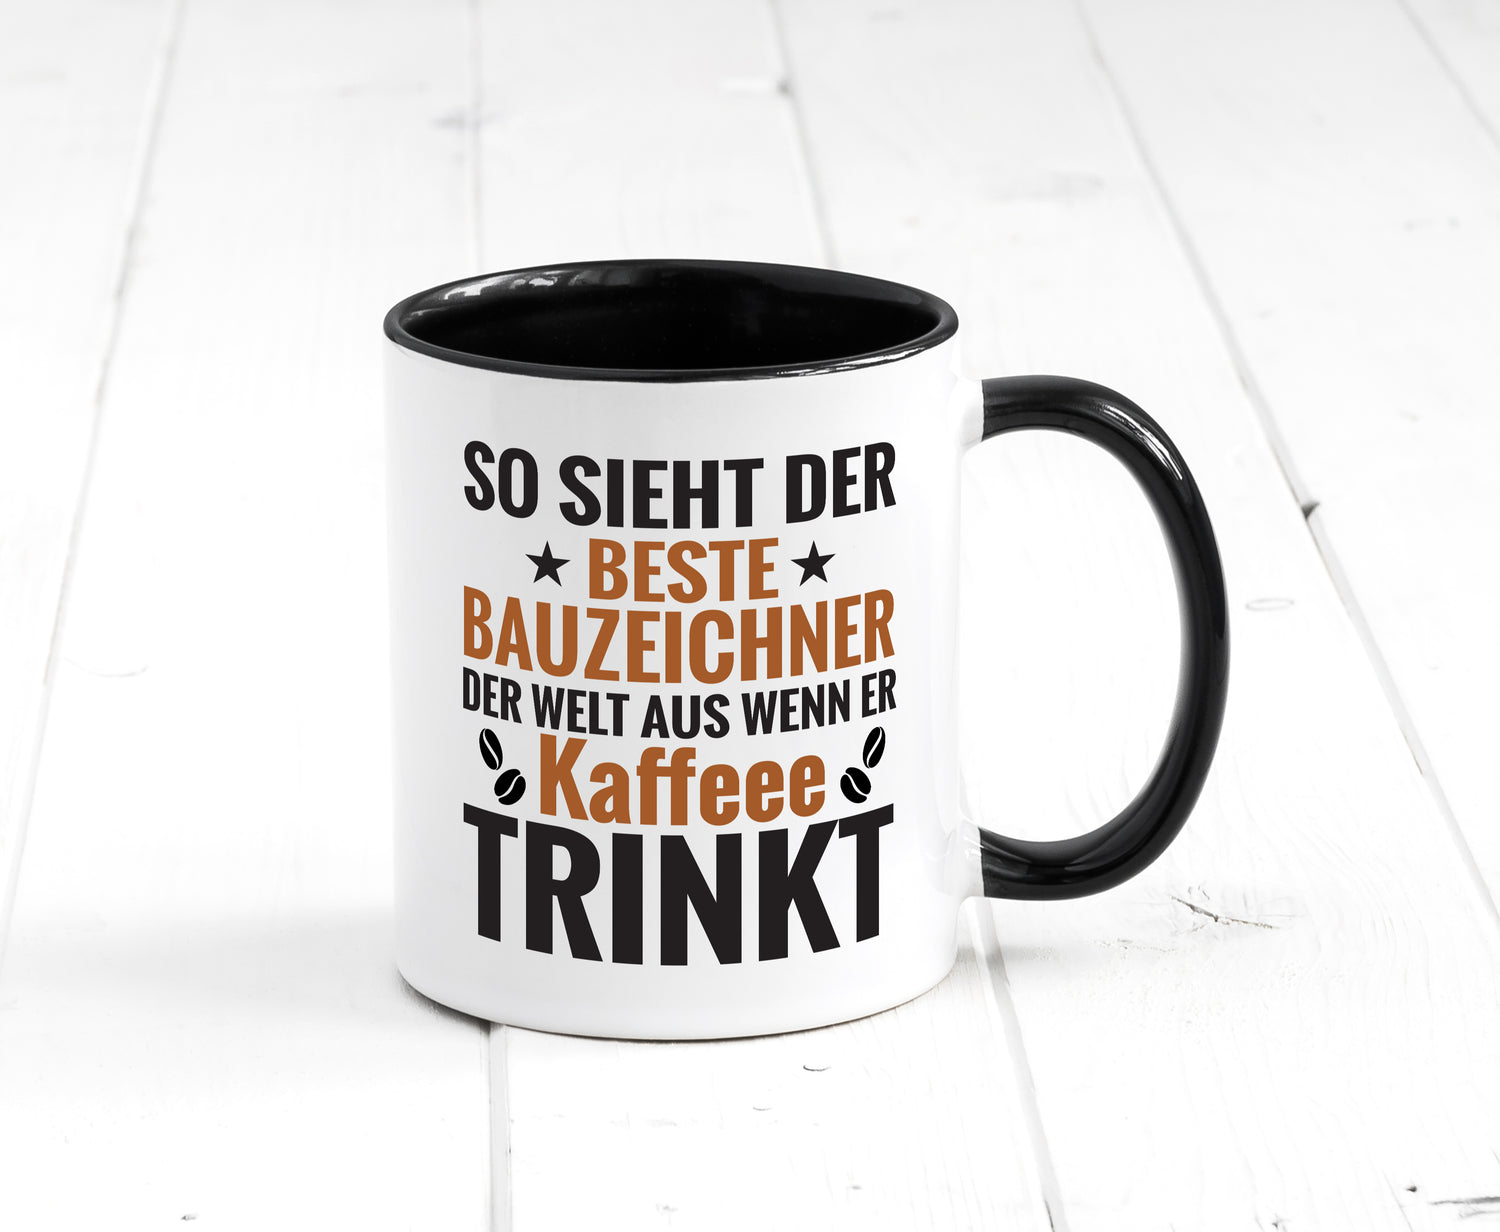 Kaffee Trink: Bauzeichner | Zeichner Tasse Weiß - Schwarz - Kaffeetasse / Geschenk / Familie